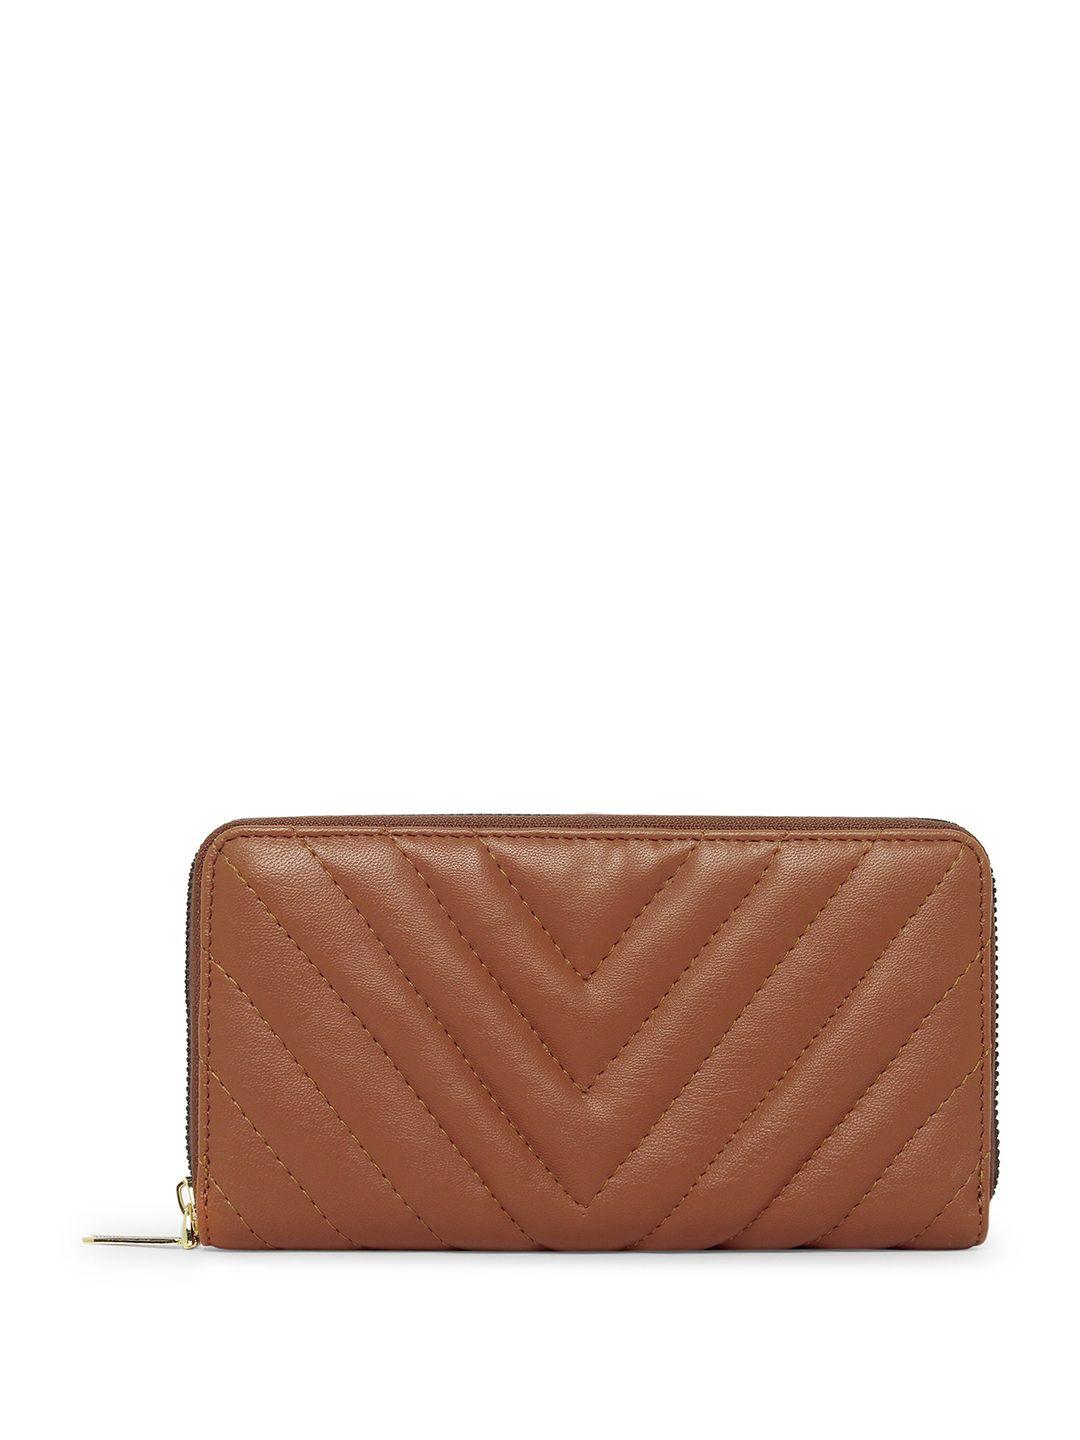 dressberry women brown striped zip around wallet